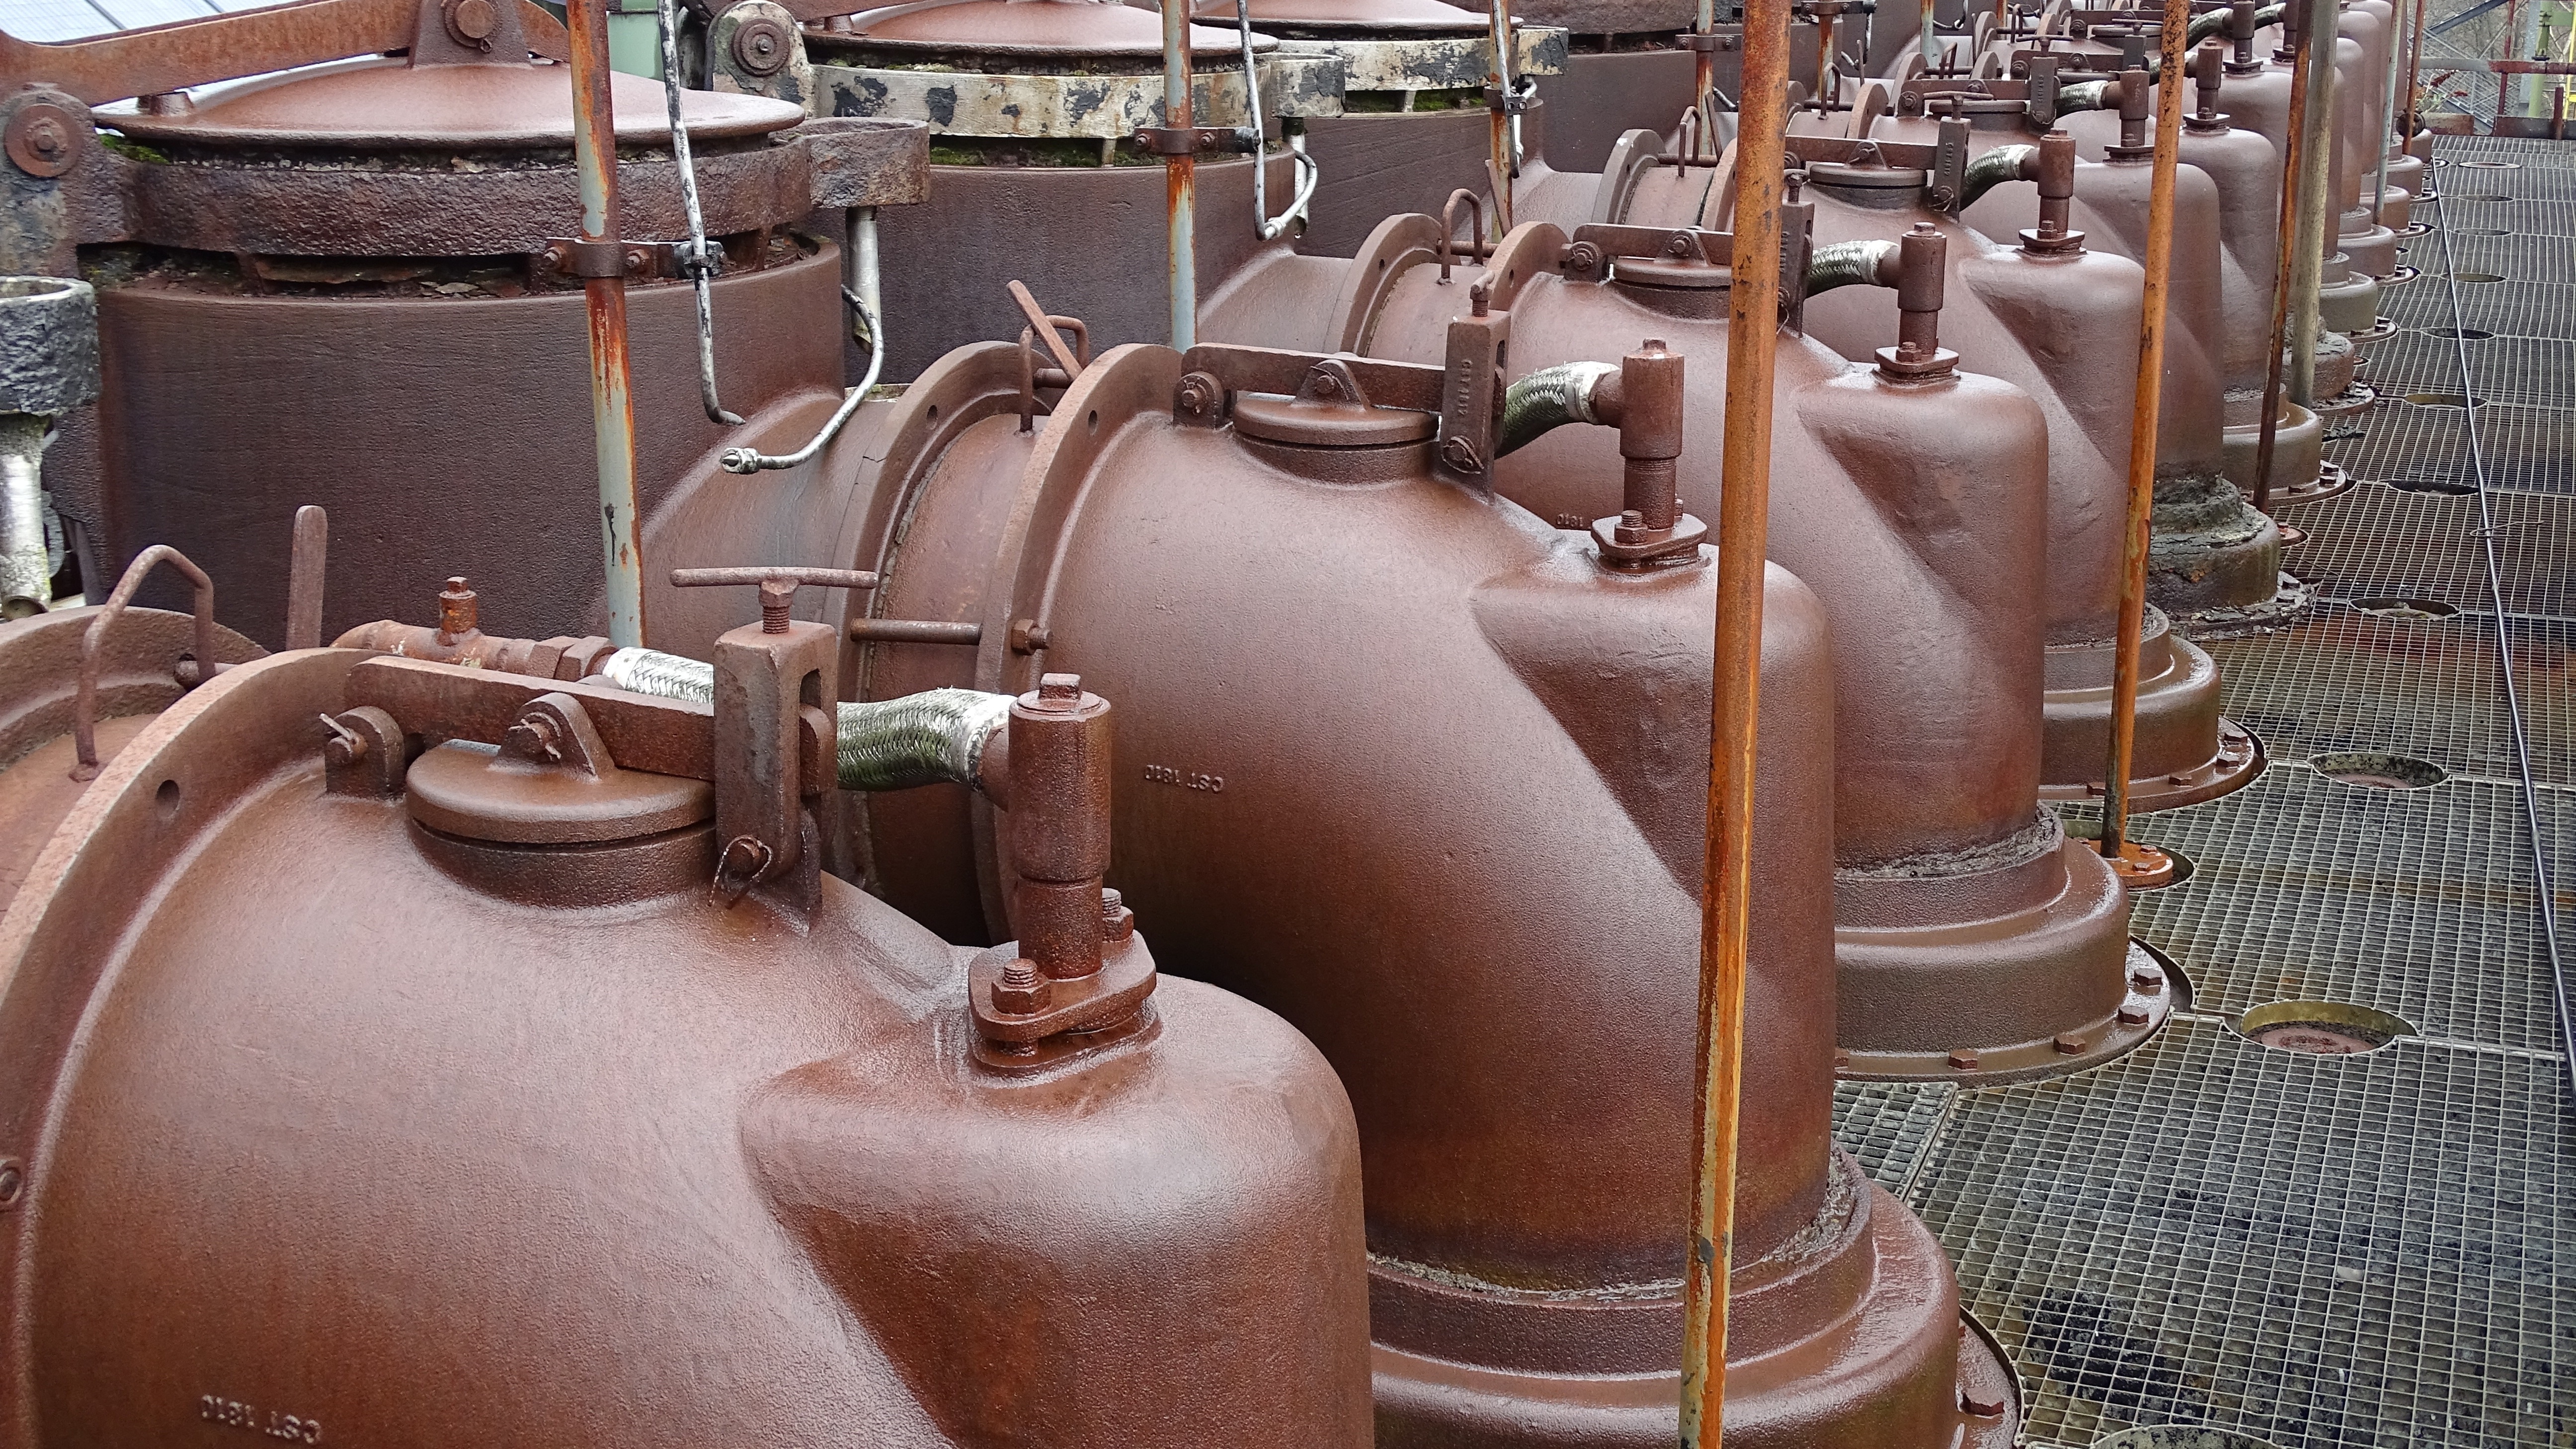 brown ceramic tank